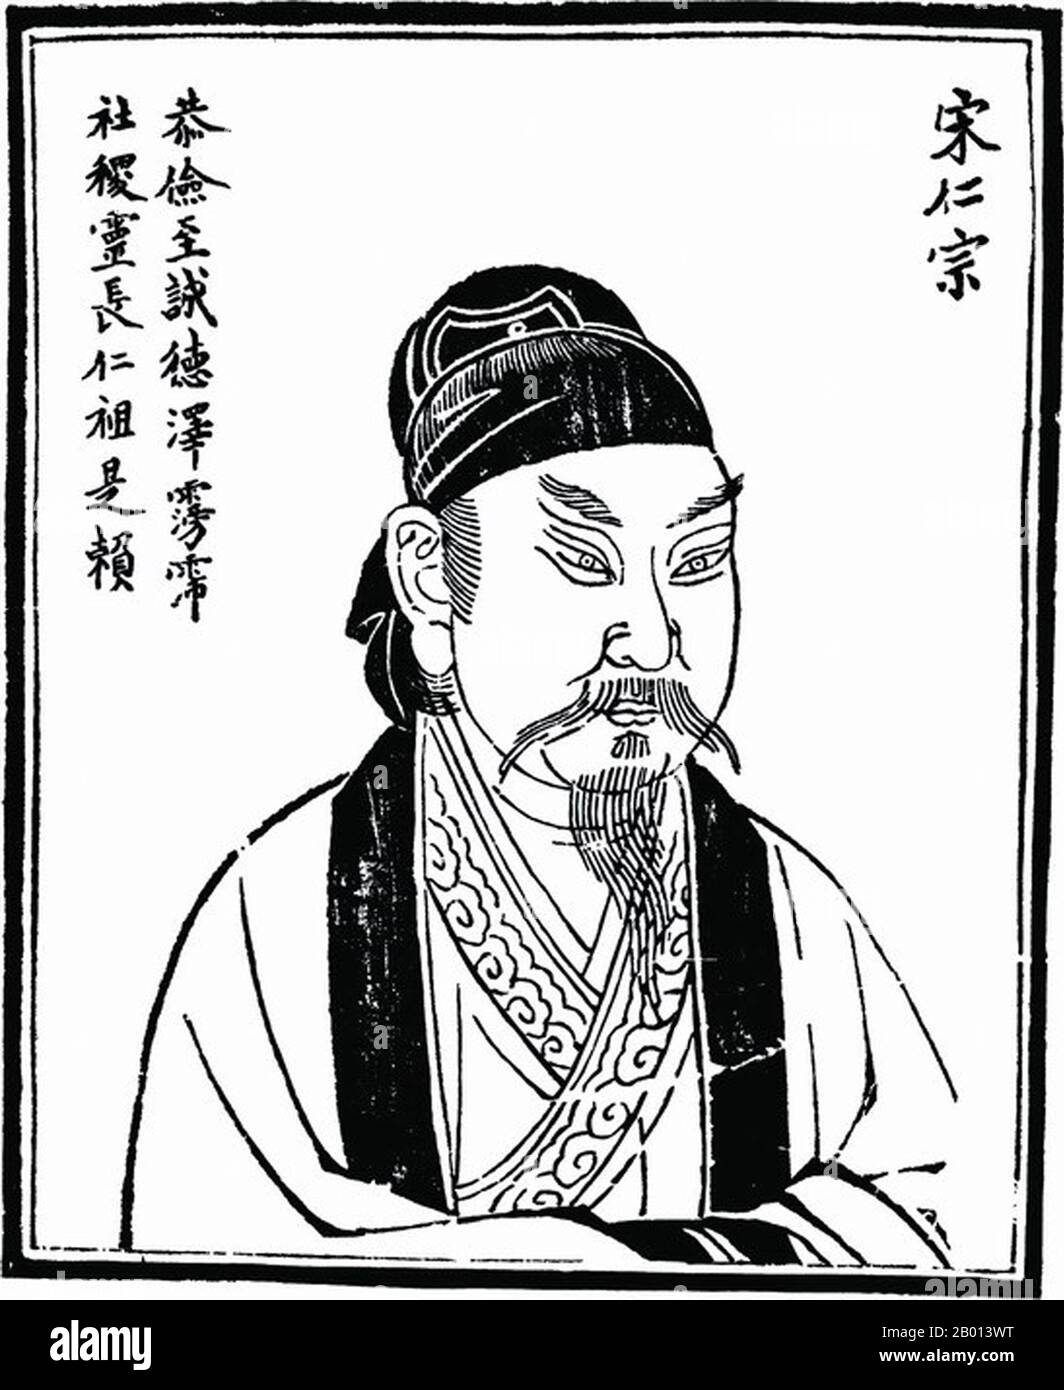 China: Kaiser Zhengzong (Zhao Heng, 23. Dezember 968 - 23. März 1022), 3. Herrscher der (nördlichen) Song Dynastie (r. 997-1022). Abbildung, c. 18. Jahrhundert. Zhenzong von Song, persönlicher Name Zhao Heng und früher bekannt als Zhao Dechang, Zhao Yuanxiu und Zhao Yuankan, war der dritte Kaiser der Song Dynastie. Seine Herrschaft war bekannt für die Konsolidierung der Macht und die Stärkung der Dynastie. Das Land florierte, und seine militärische Macht wurde weiter gestärkt. Stockfoto